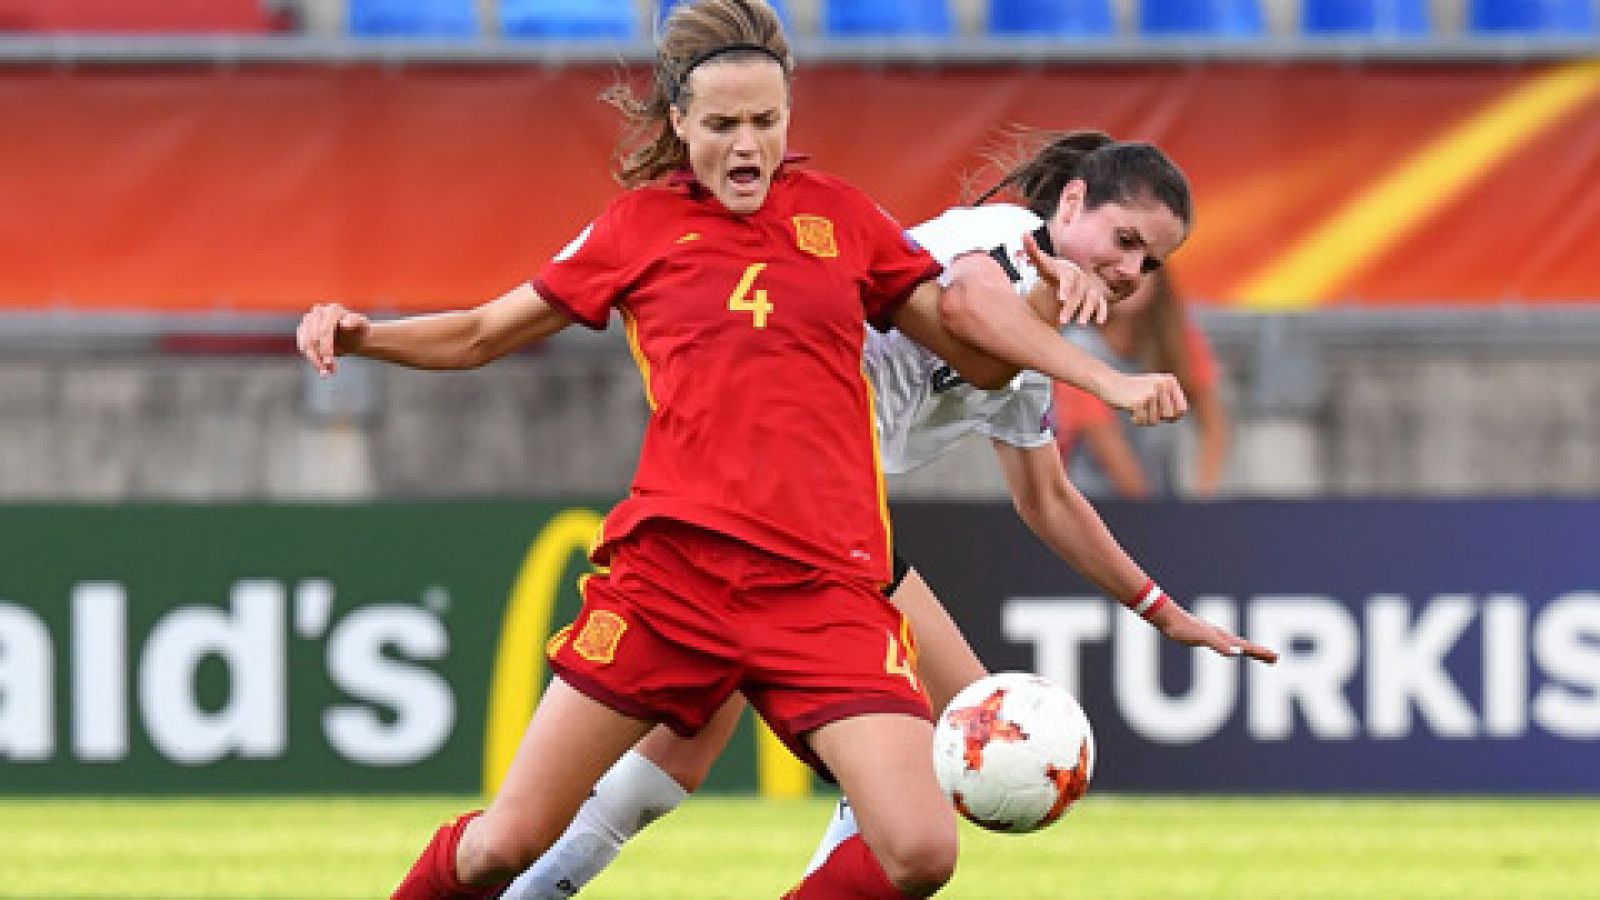 La selección española de fútbol femenino vio esfumado su sueño de alcanzar las semifinales en la tanda de penaltis contra Austria, pese a su dominio durante todo el partido.